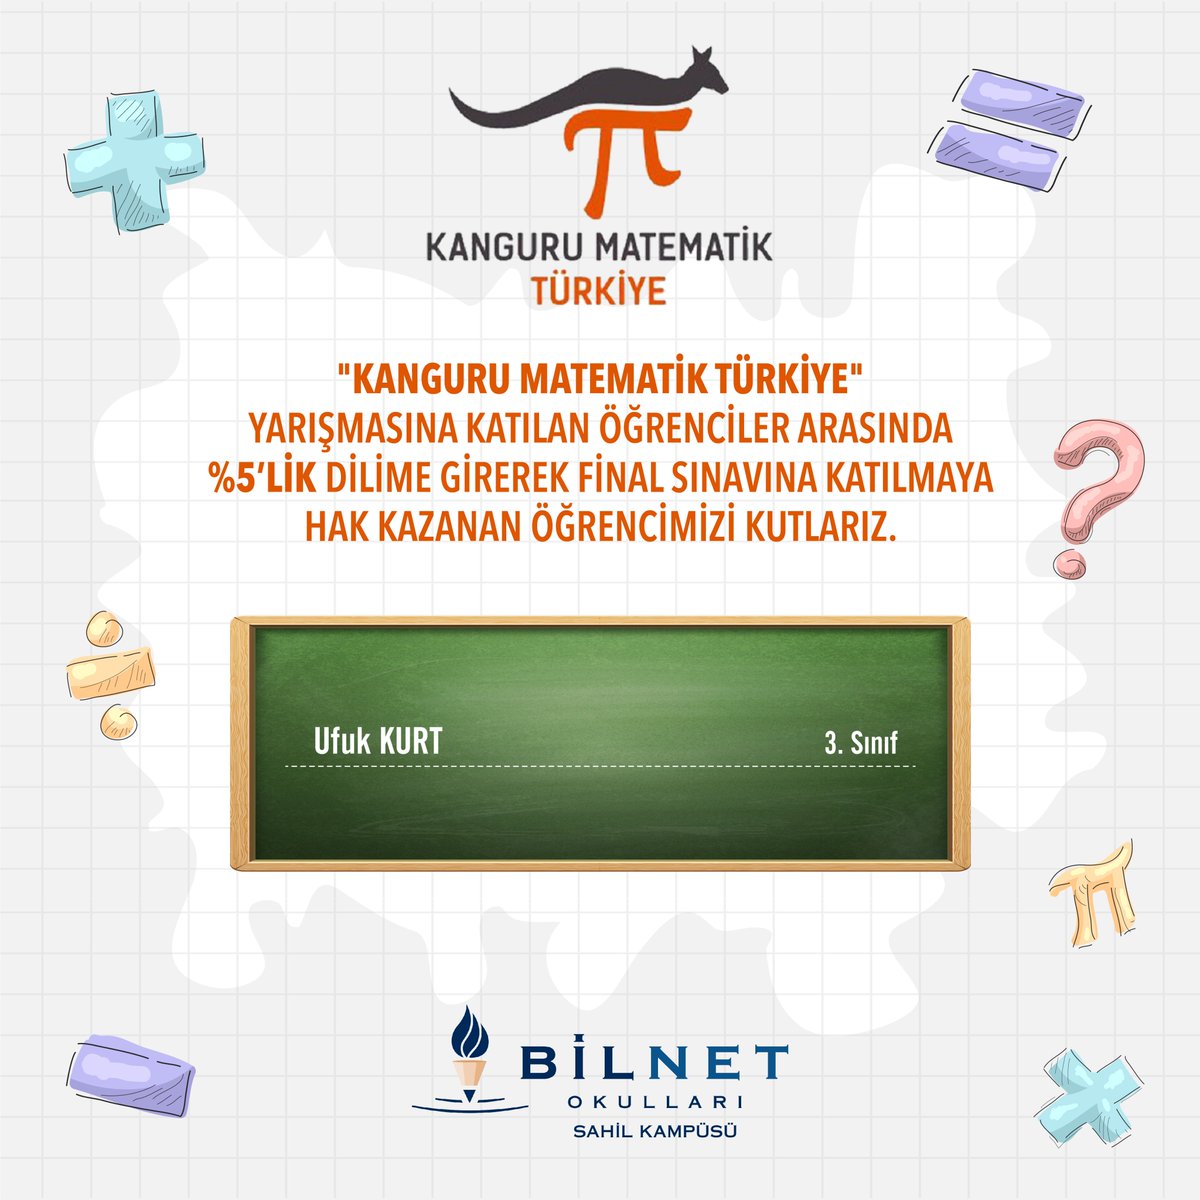 'Kanguru Matematik Türkiye' yarışmasına katılan öğrenciler arasında %5'lik dilime girerek final sınavına katılmaya hak kazanan öğrencimizi kutlarız.

#BilnetOkulları #BilnetSchools #KanguruMatematik